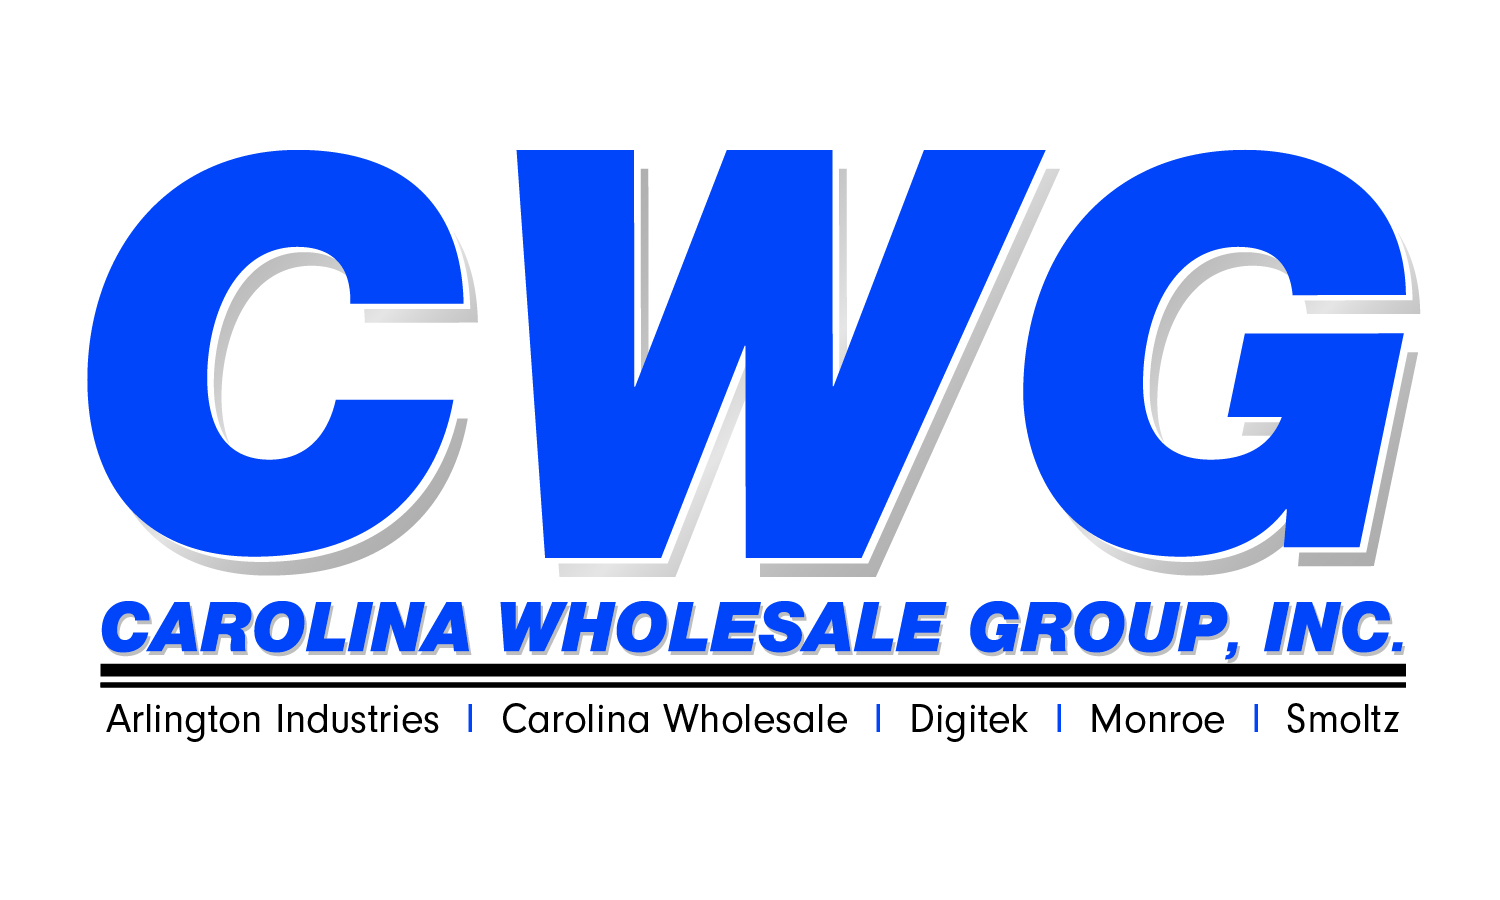 Carolina Wholesale Group